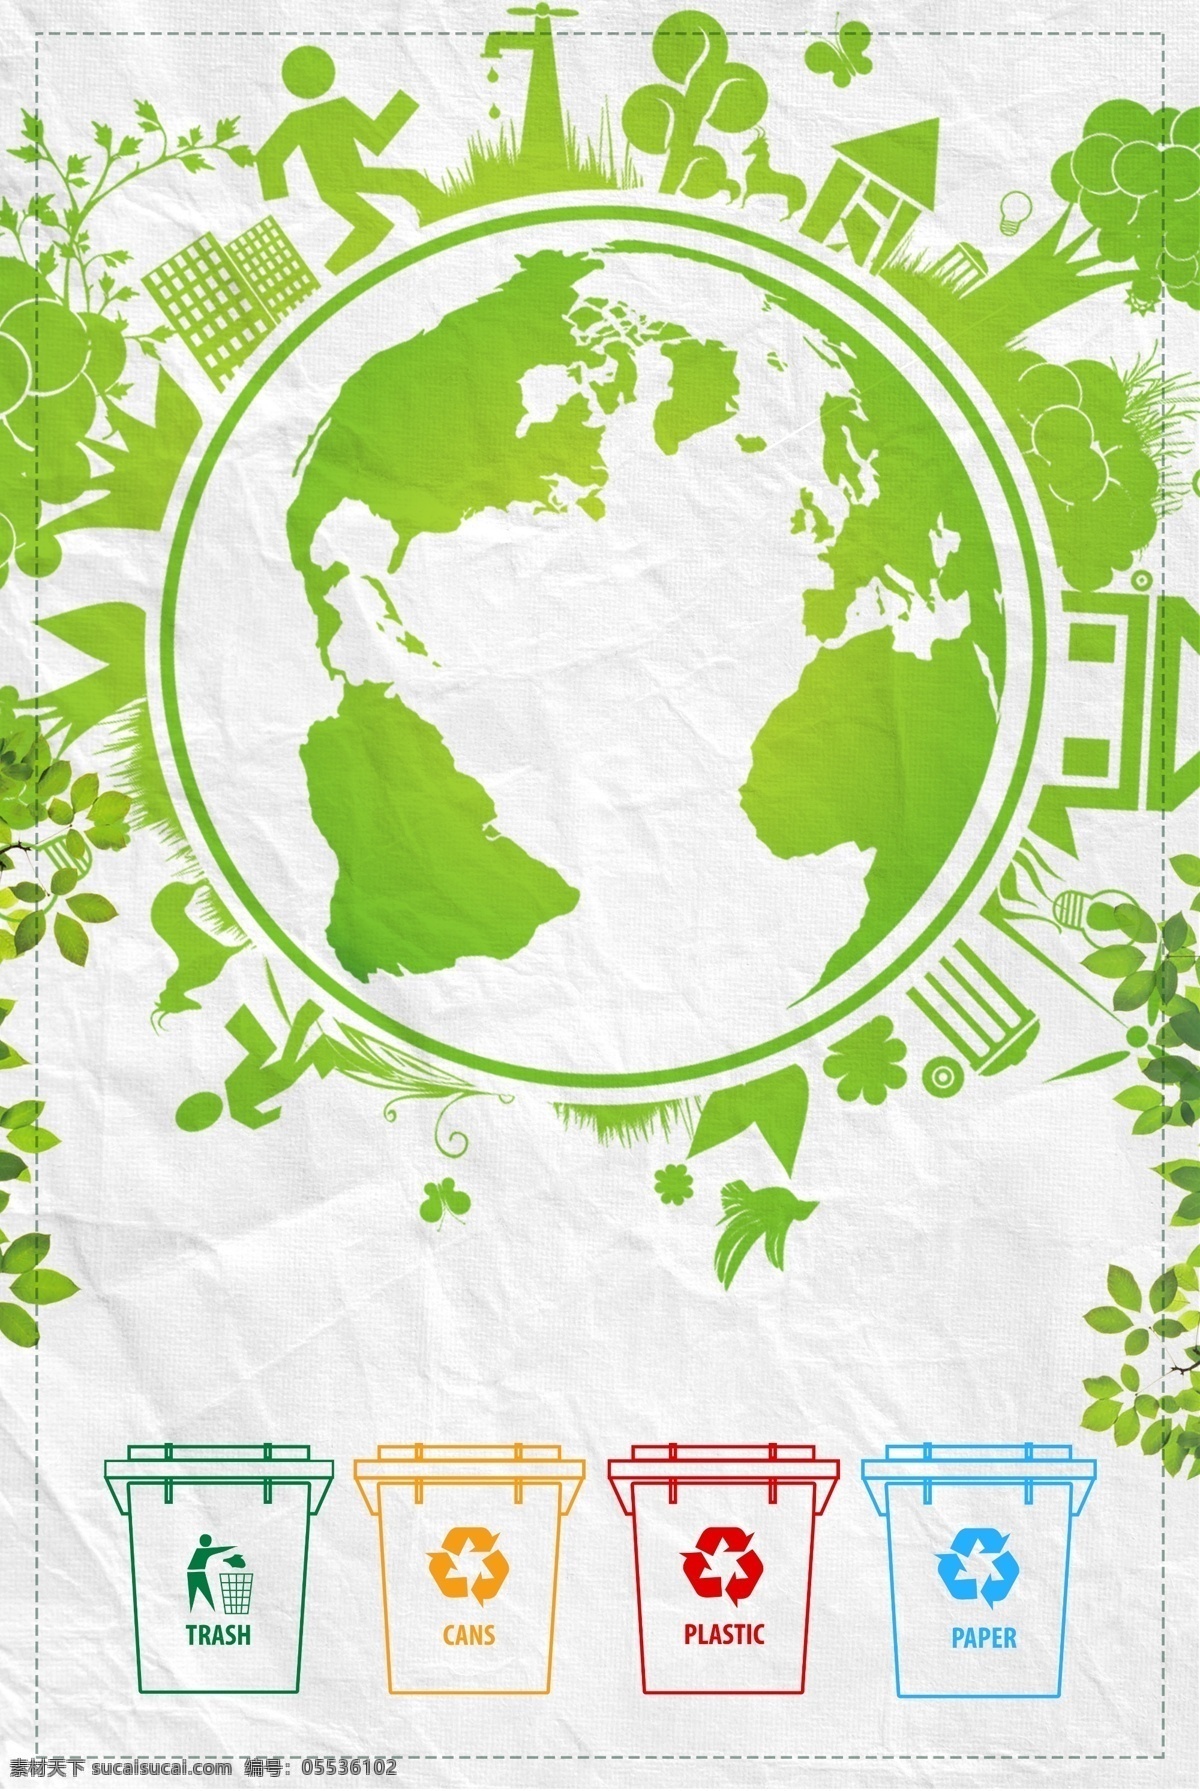 世界 卫生日 环保 海报 世界卫生日 垃圾桶 环保logo 绿色 地球 公益 广告 背景